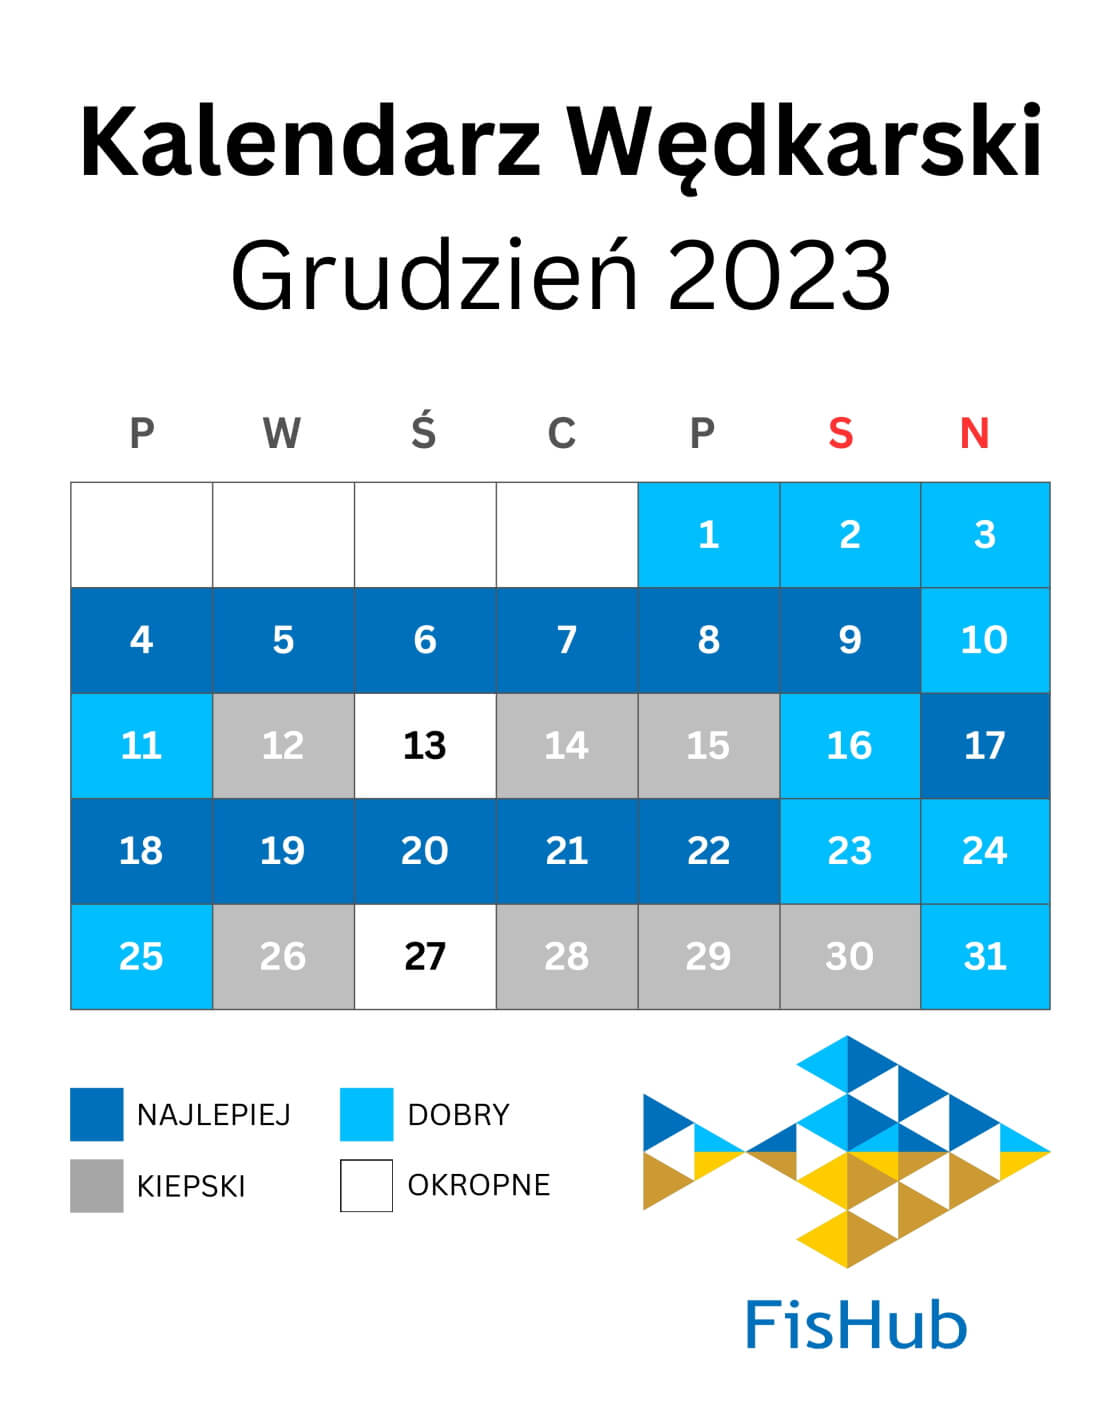 Kalendarz wędkarski na Grudzień 2023